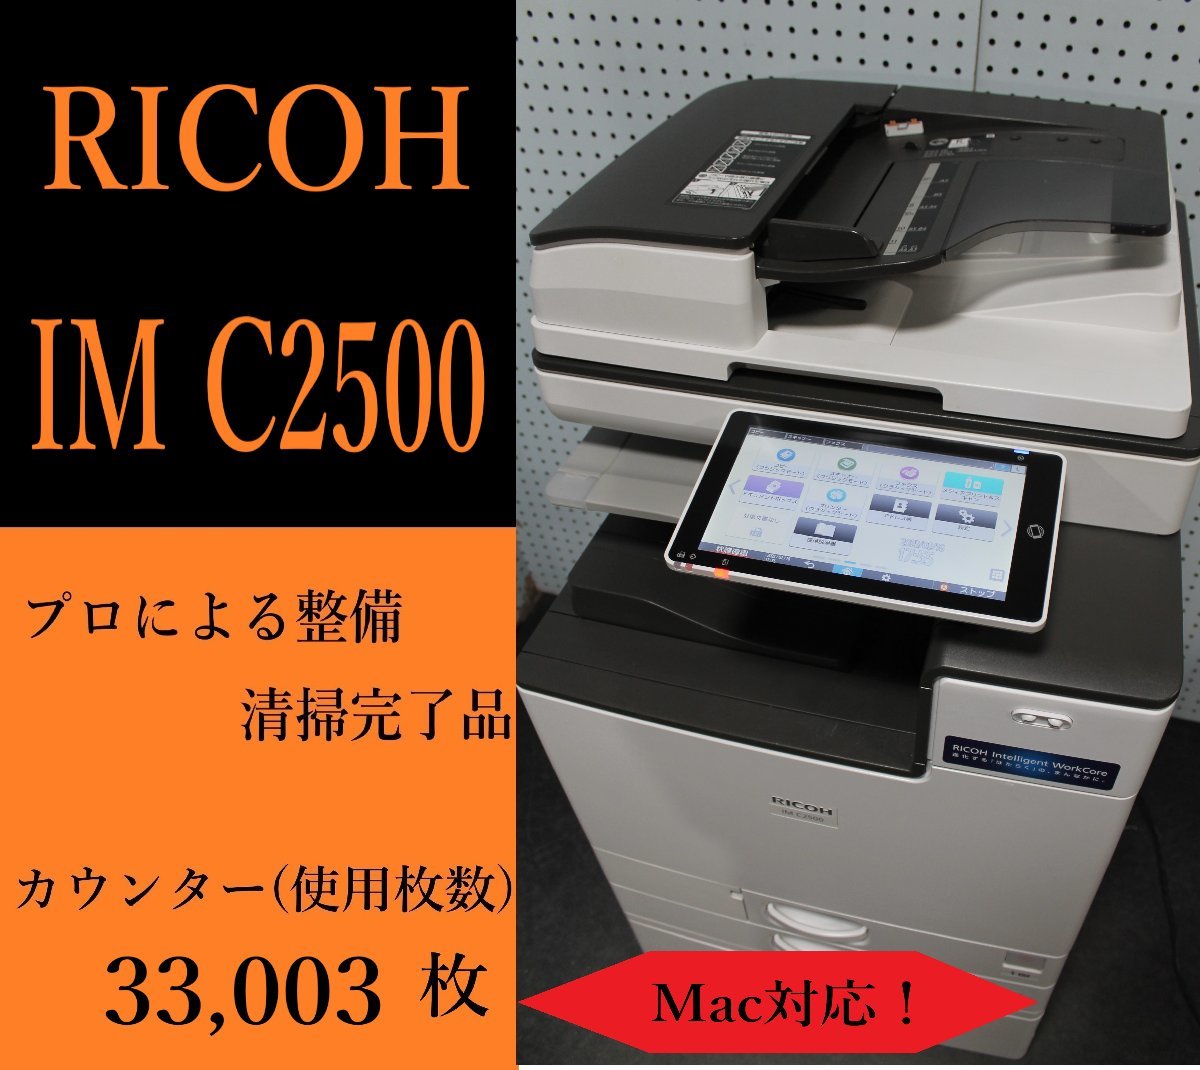 大阪発】【RICOH】カラー複合機 ☆IM C2500☆【Mac対応】カウンター 